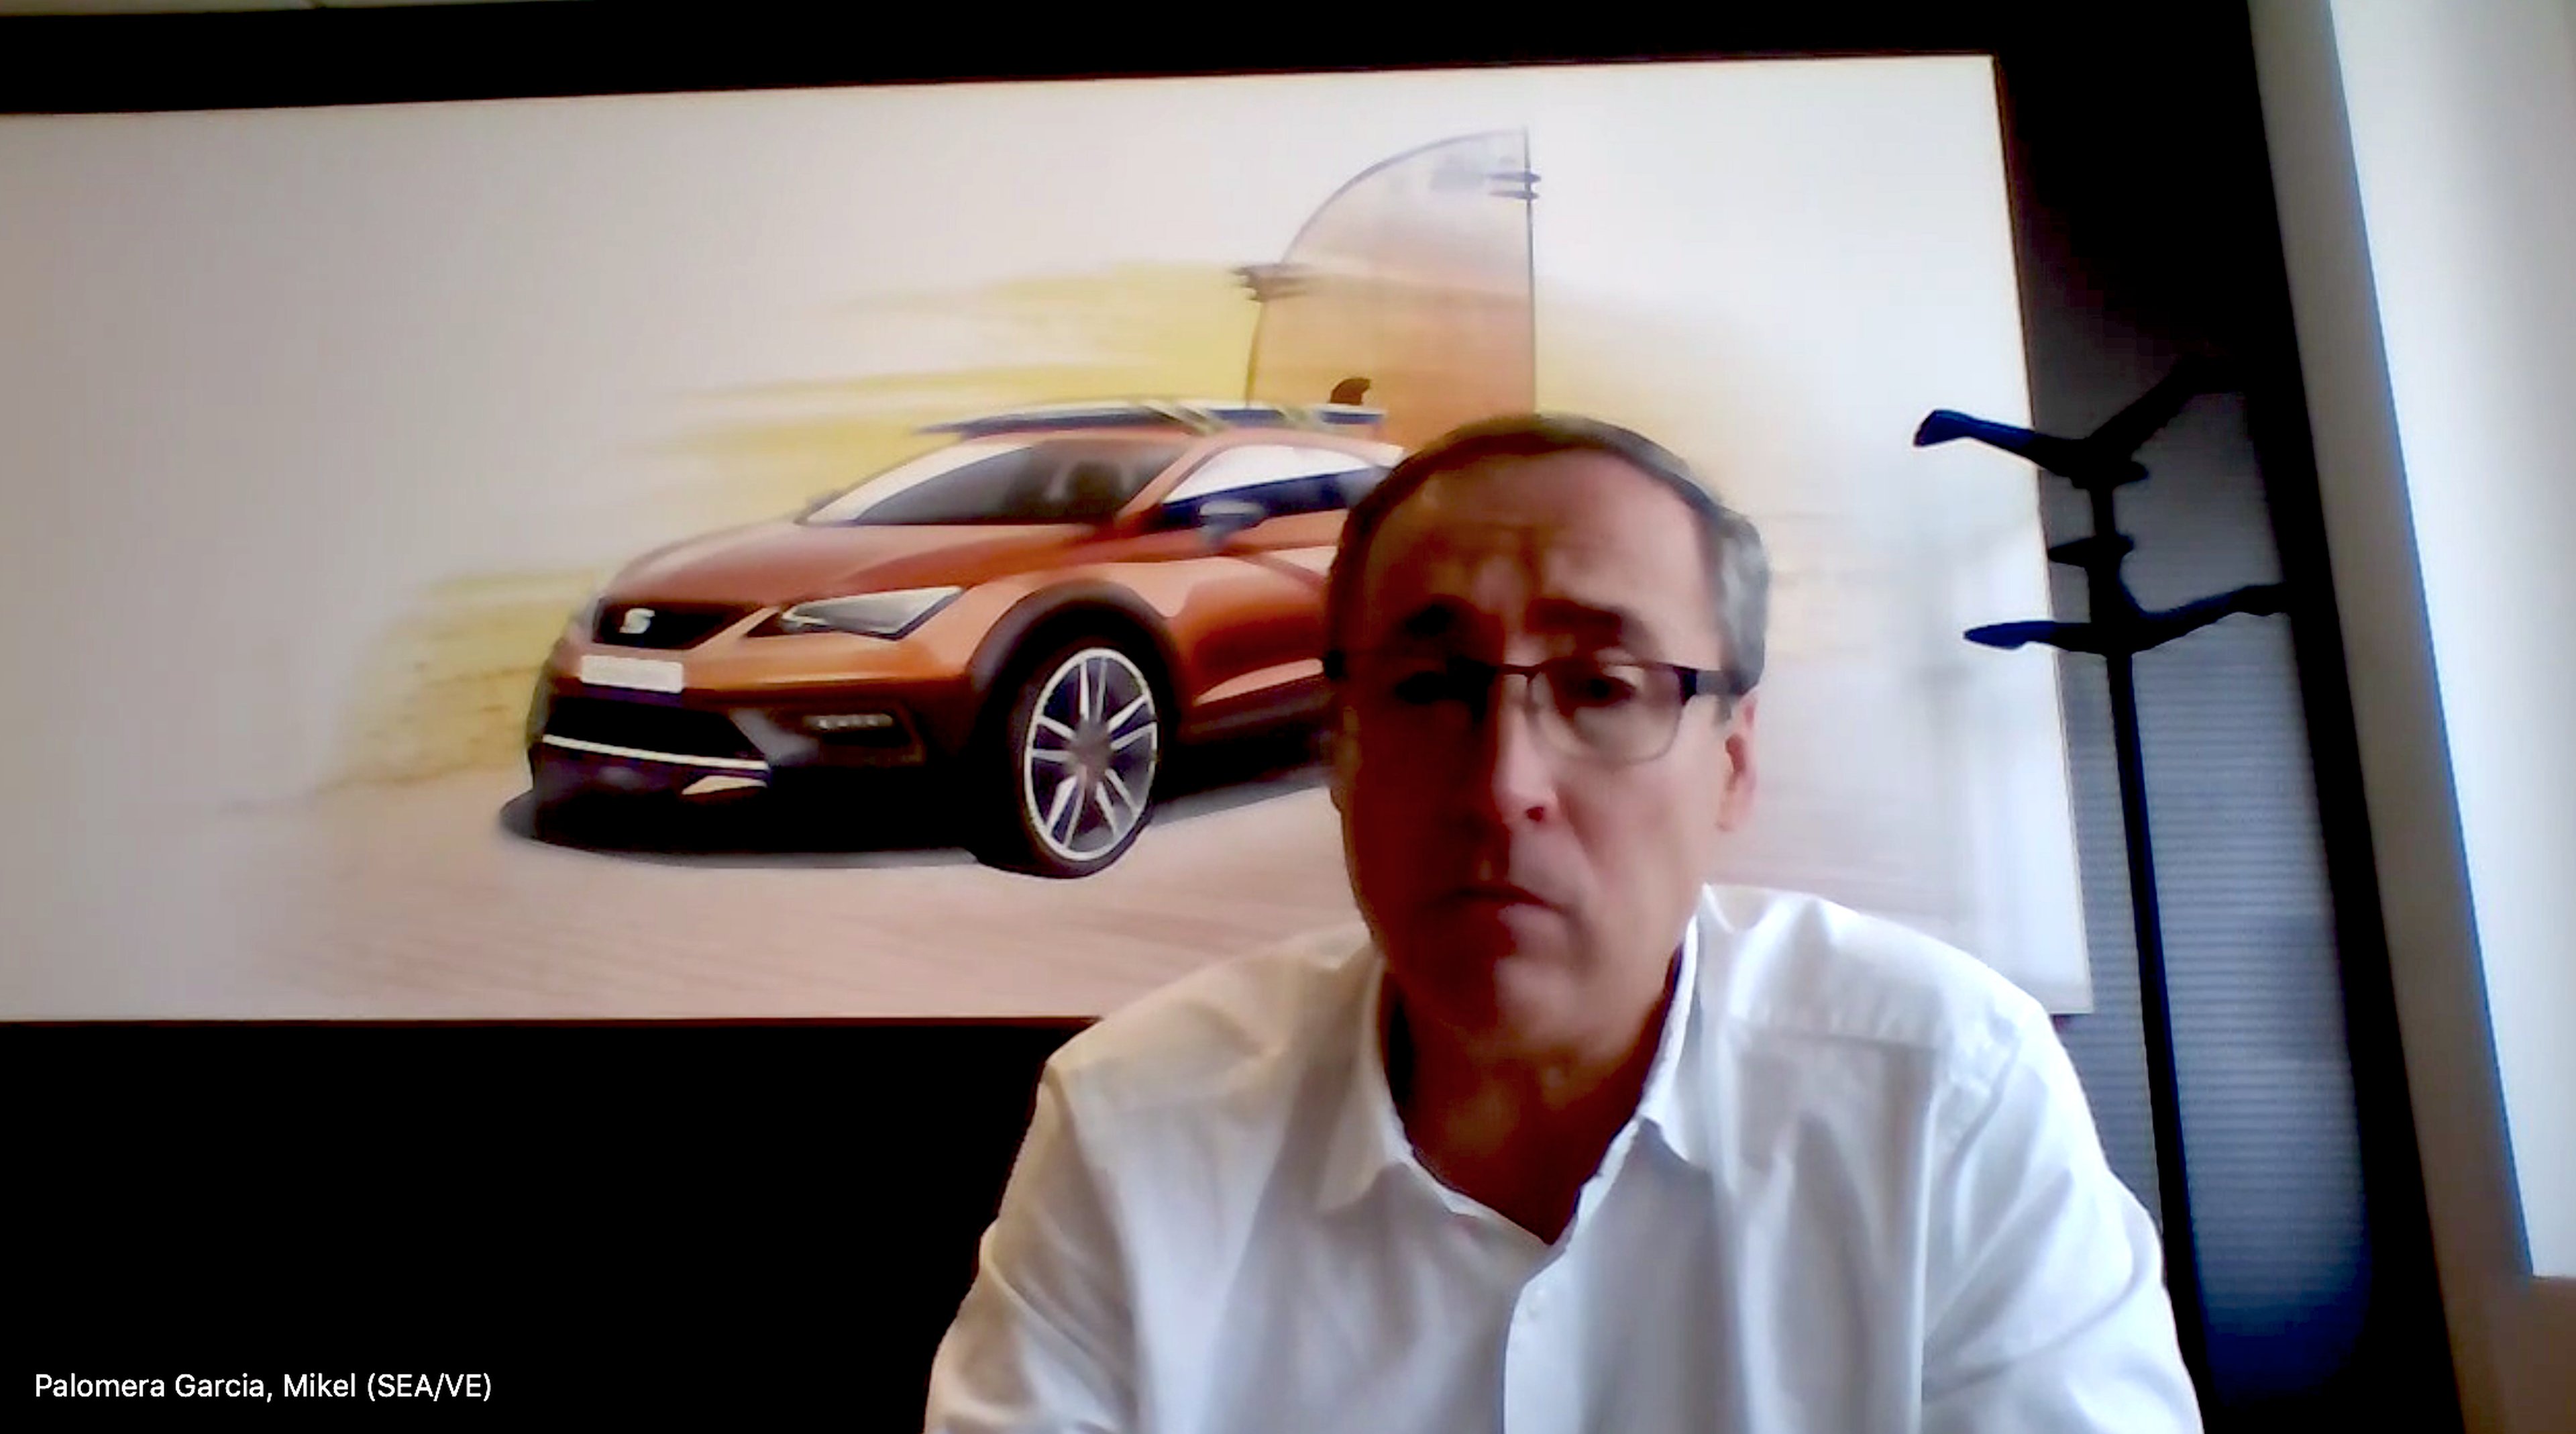 Mikel Palomera, director general de Seat España, en un momento de la entrevista realizada por videoconferencia